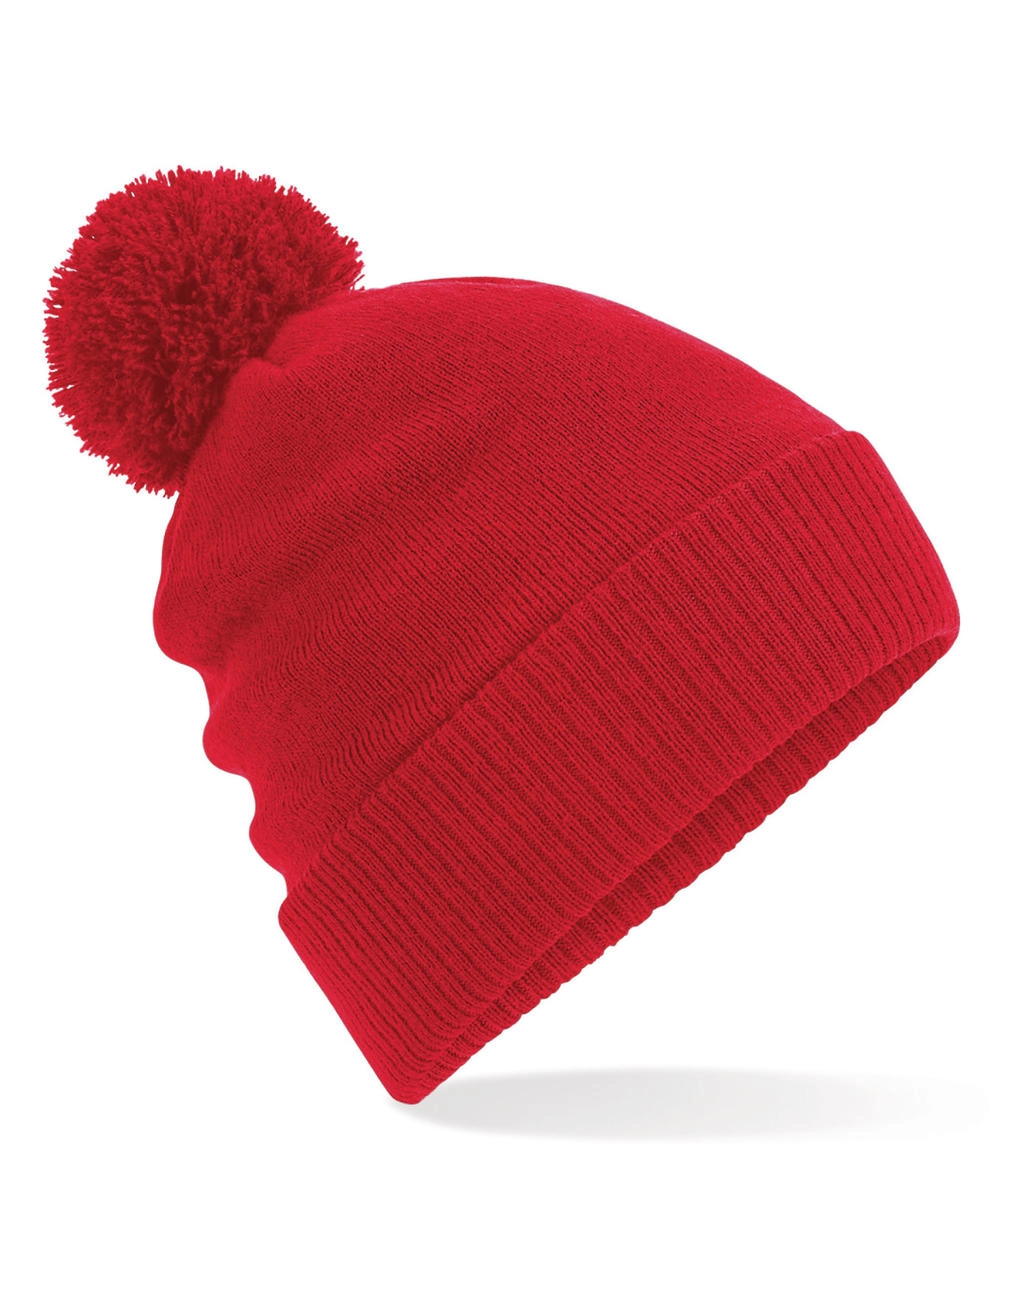 Thermal Snowstar® Beanie zum Besticken und Bedrucken in der Farbe Classic Red mit Ihren Logo, Schriftzug oder Motiv.